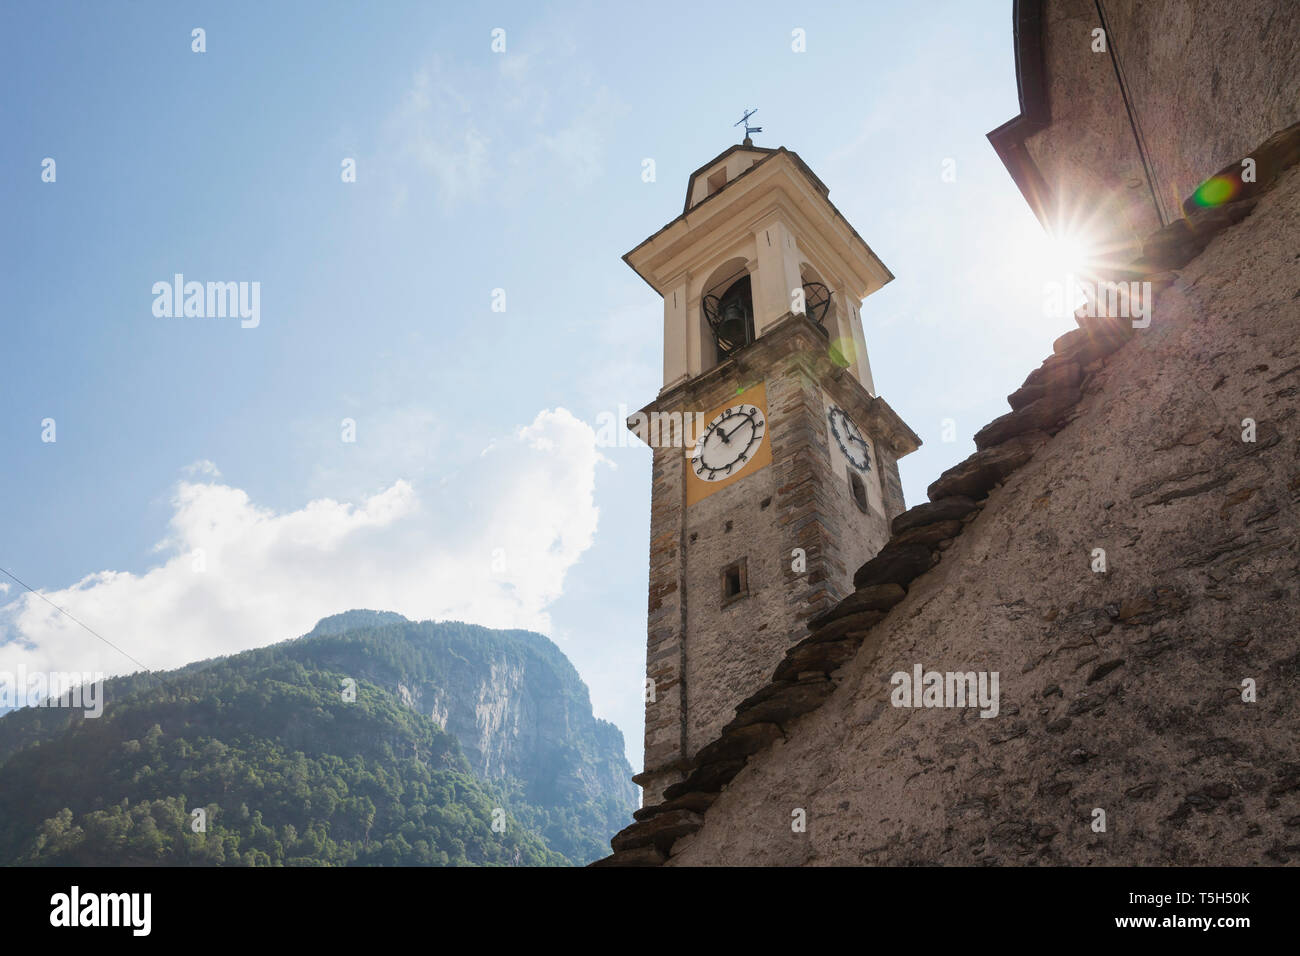 Switzerland, Ticino, Sonogno, historic village church, clock tower Stock Photo